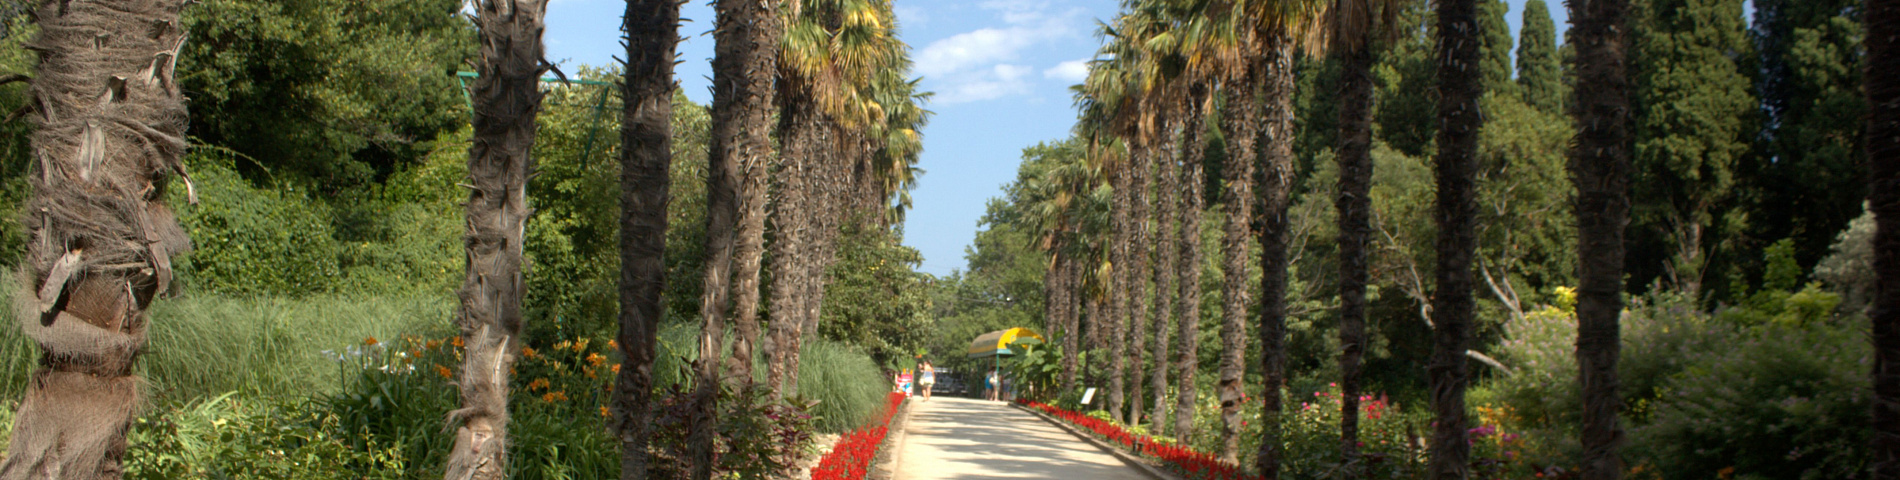 Никитский сад Ялта Крым